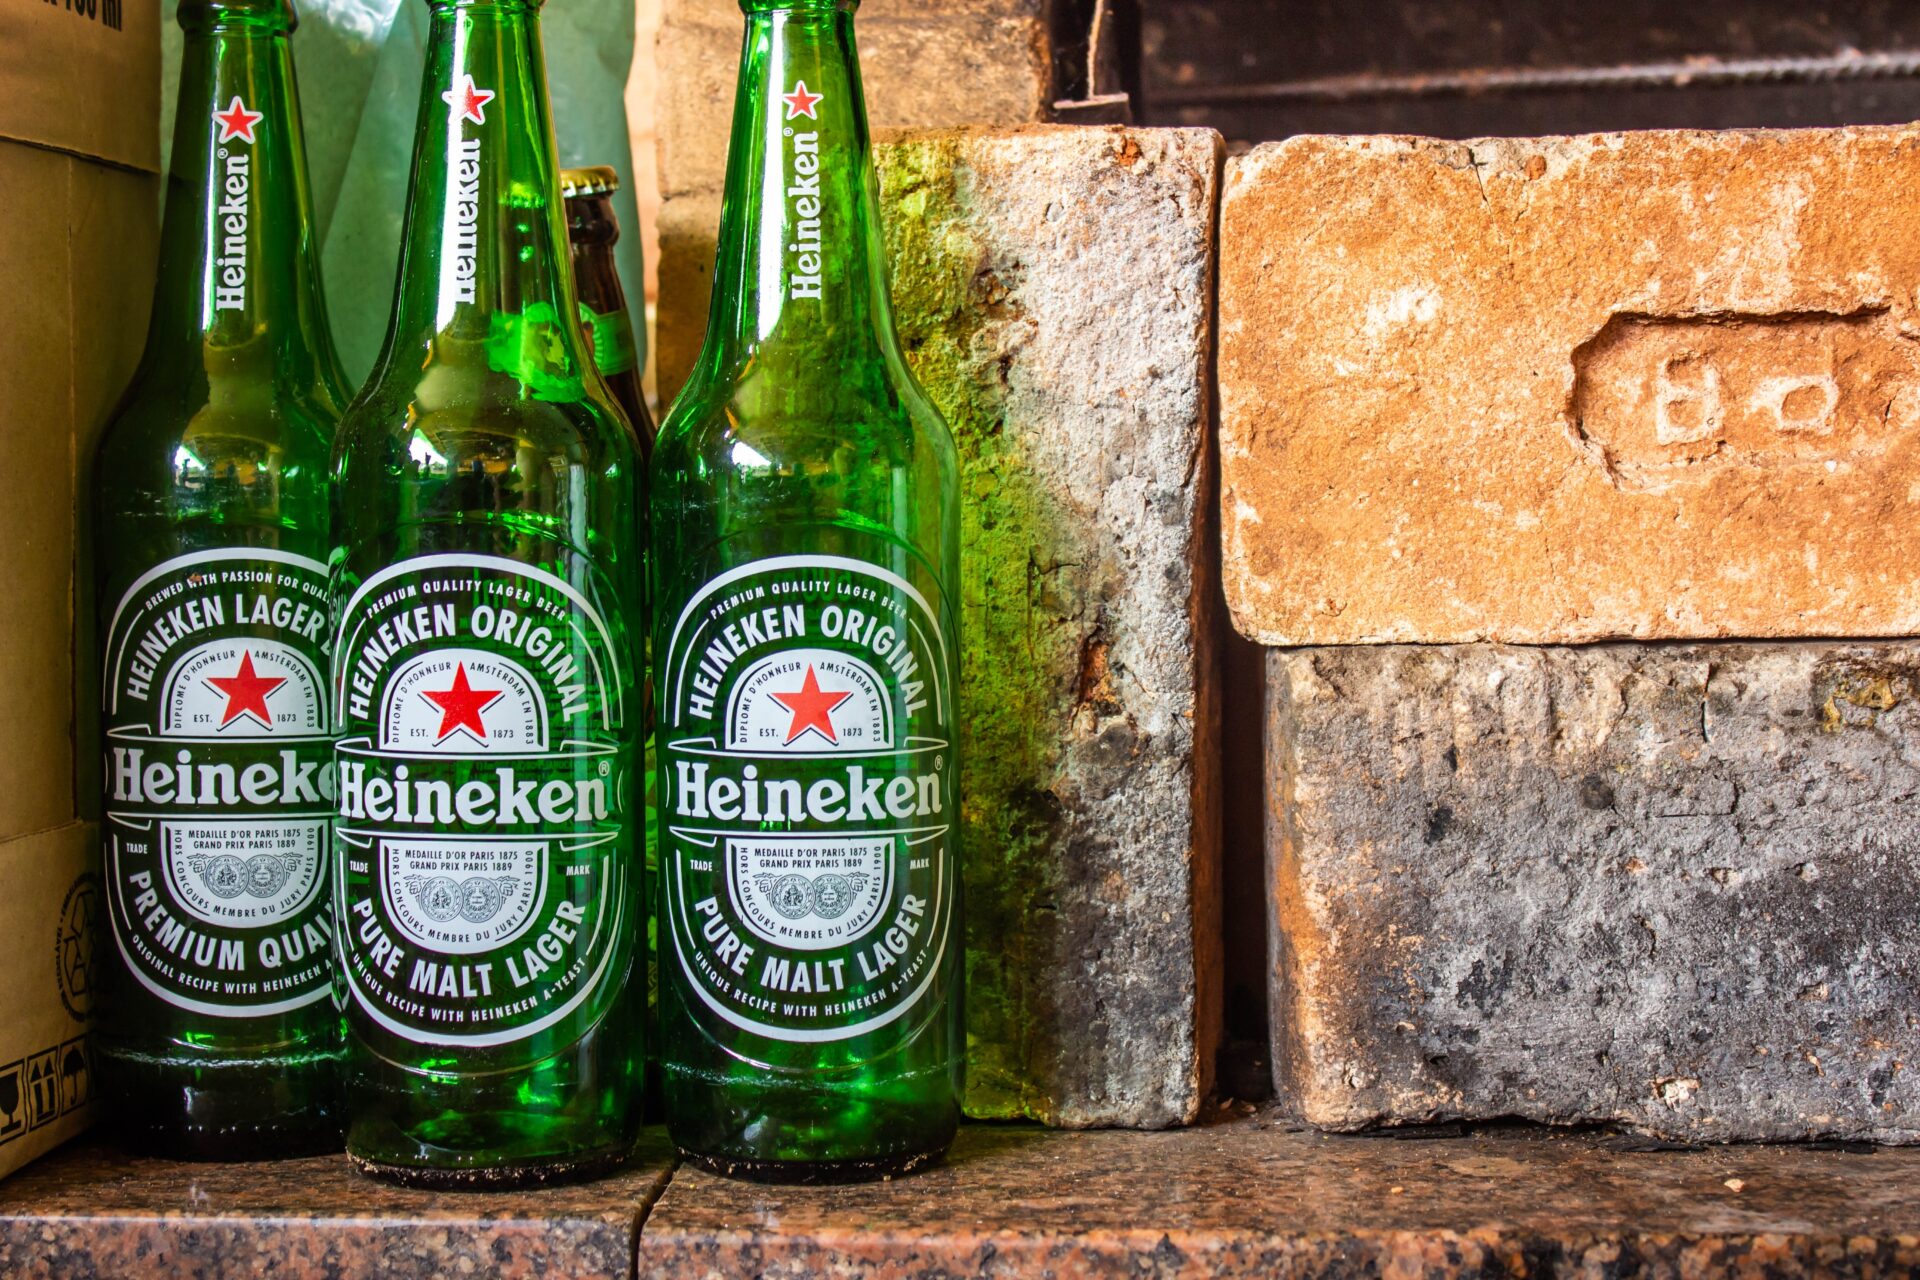 3 green bottles of Heineken beer near brown bricks